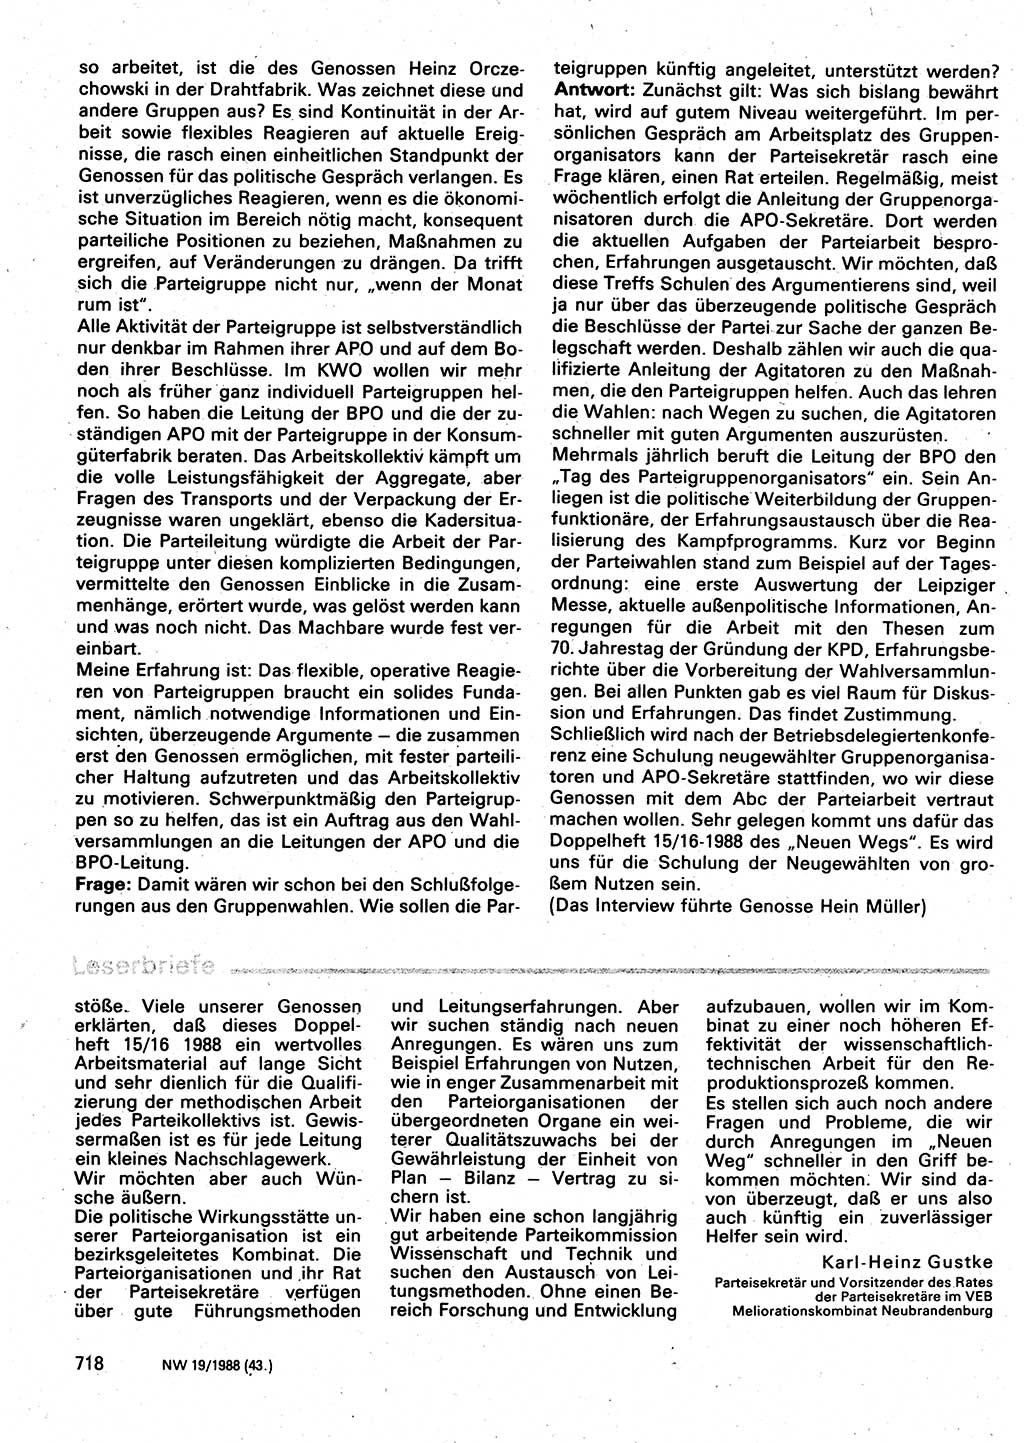 Neuer Weg (NW), Organ des Zentralkomitees (ZK) der SED (Sozialistische Einheitspartei Deutschlands) für Fragen des Parteilebens, 43. Jahrgang [Deutsche Demokratische Republik (DDR)] 1988, Seite 718 (NW ZK SED DDR 1988, S. 718)